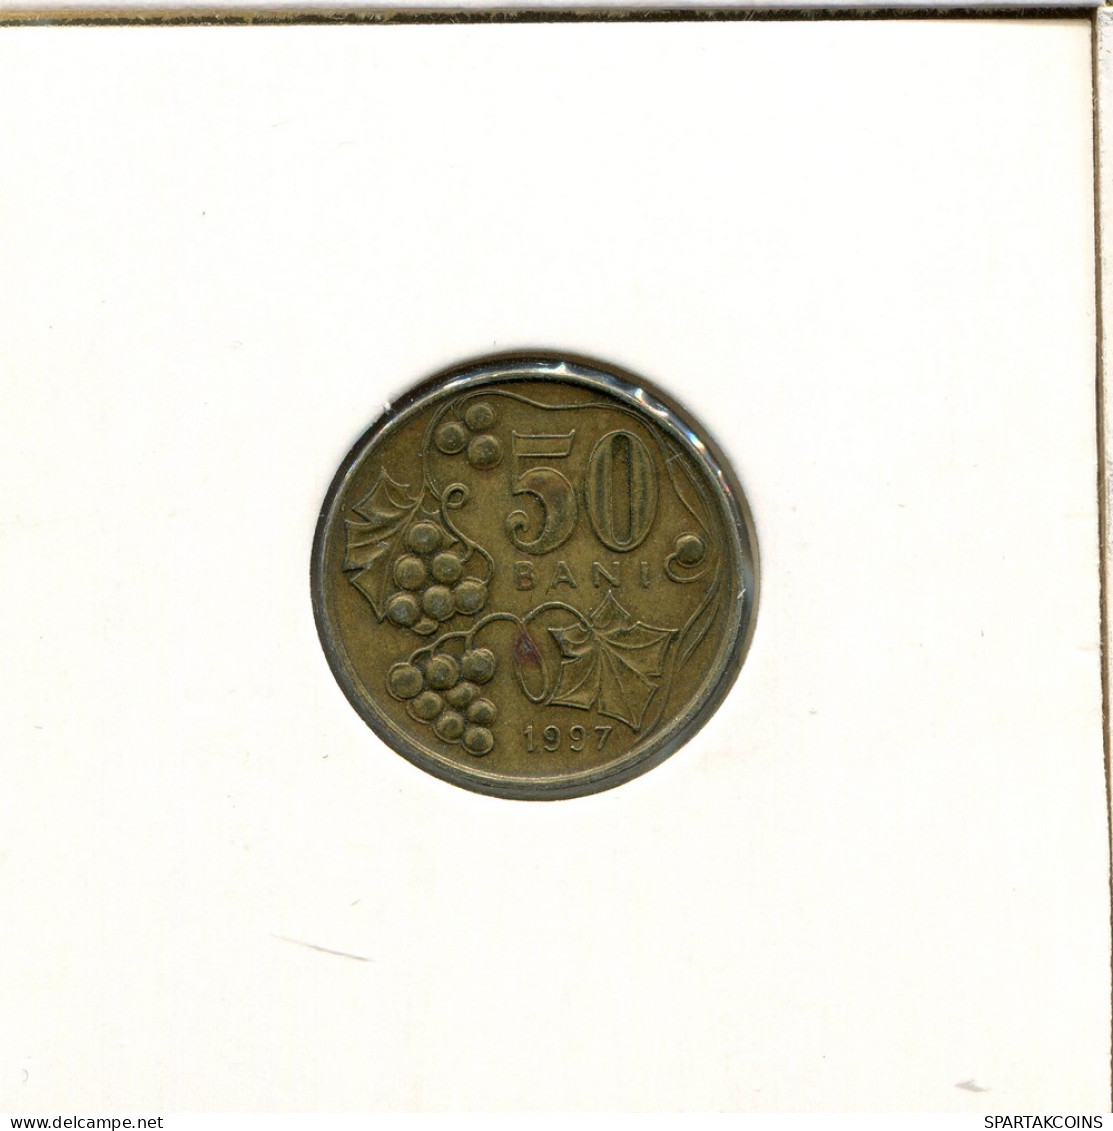 5 BANI 1997 MOLDOVA Coin #AR707.U - Moldawien (Moldau)